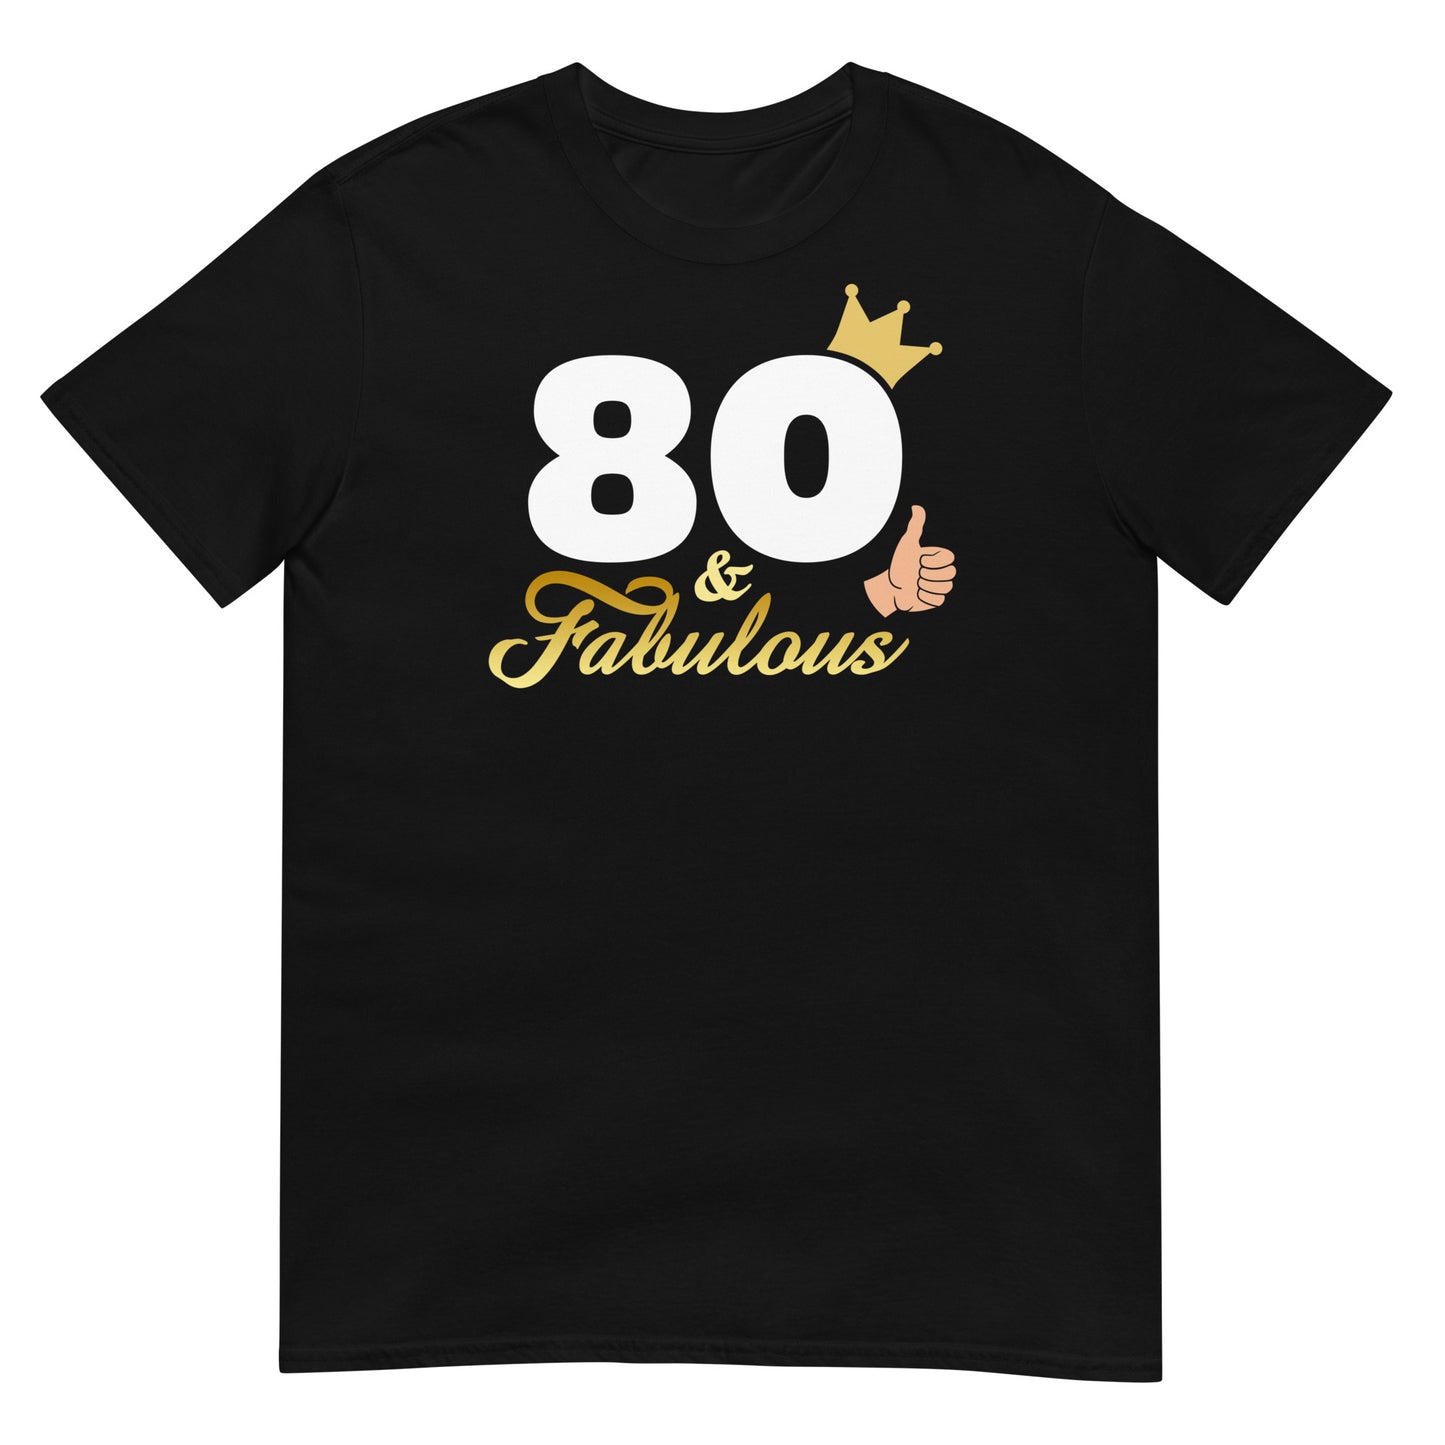 Camiseta 80 y Fabulos@